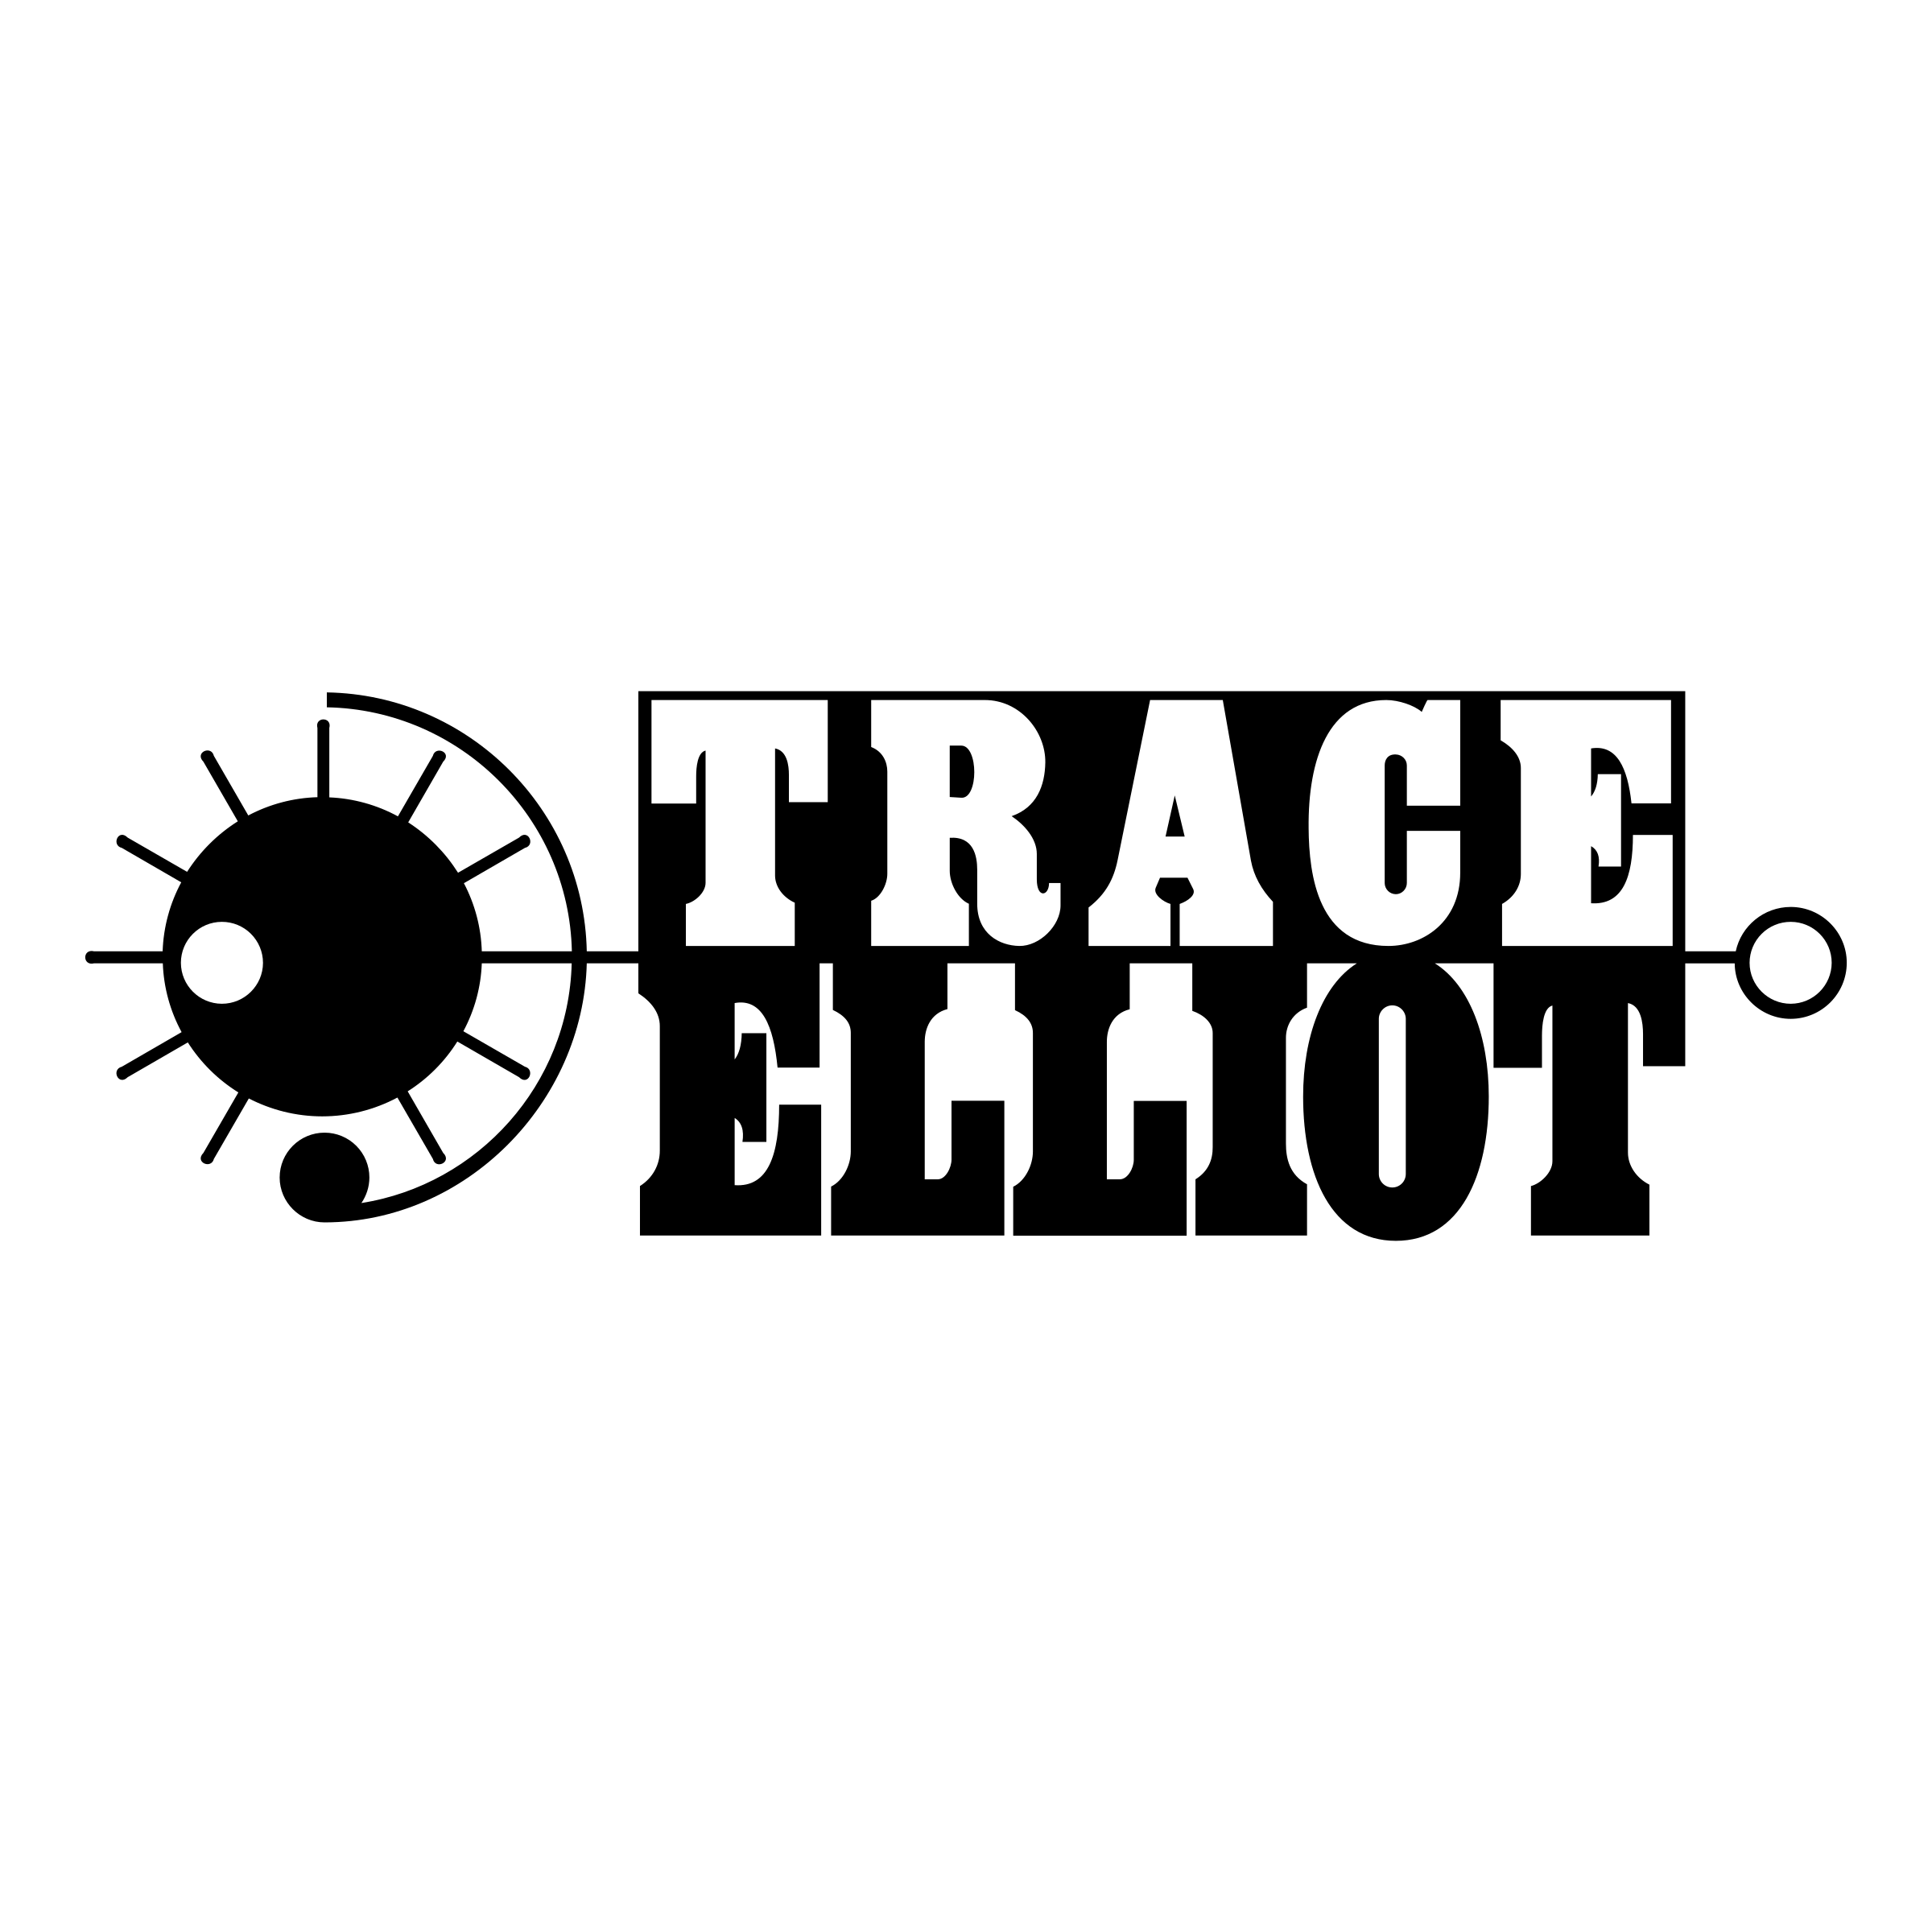 Elliot Logo - Trace Elliot Logo PNG Transparent & SVG Vector